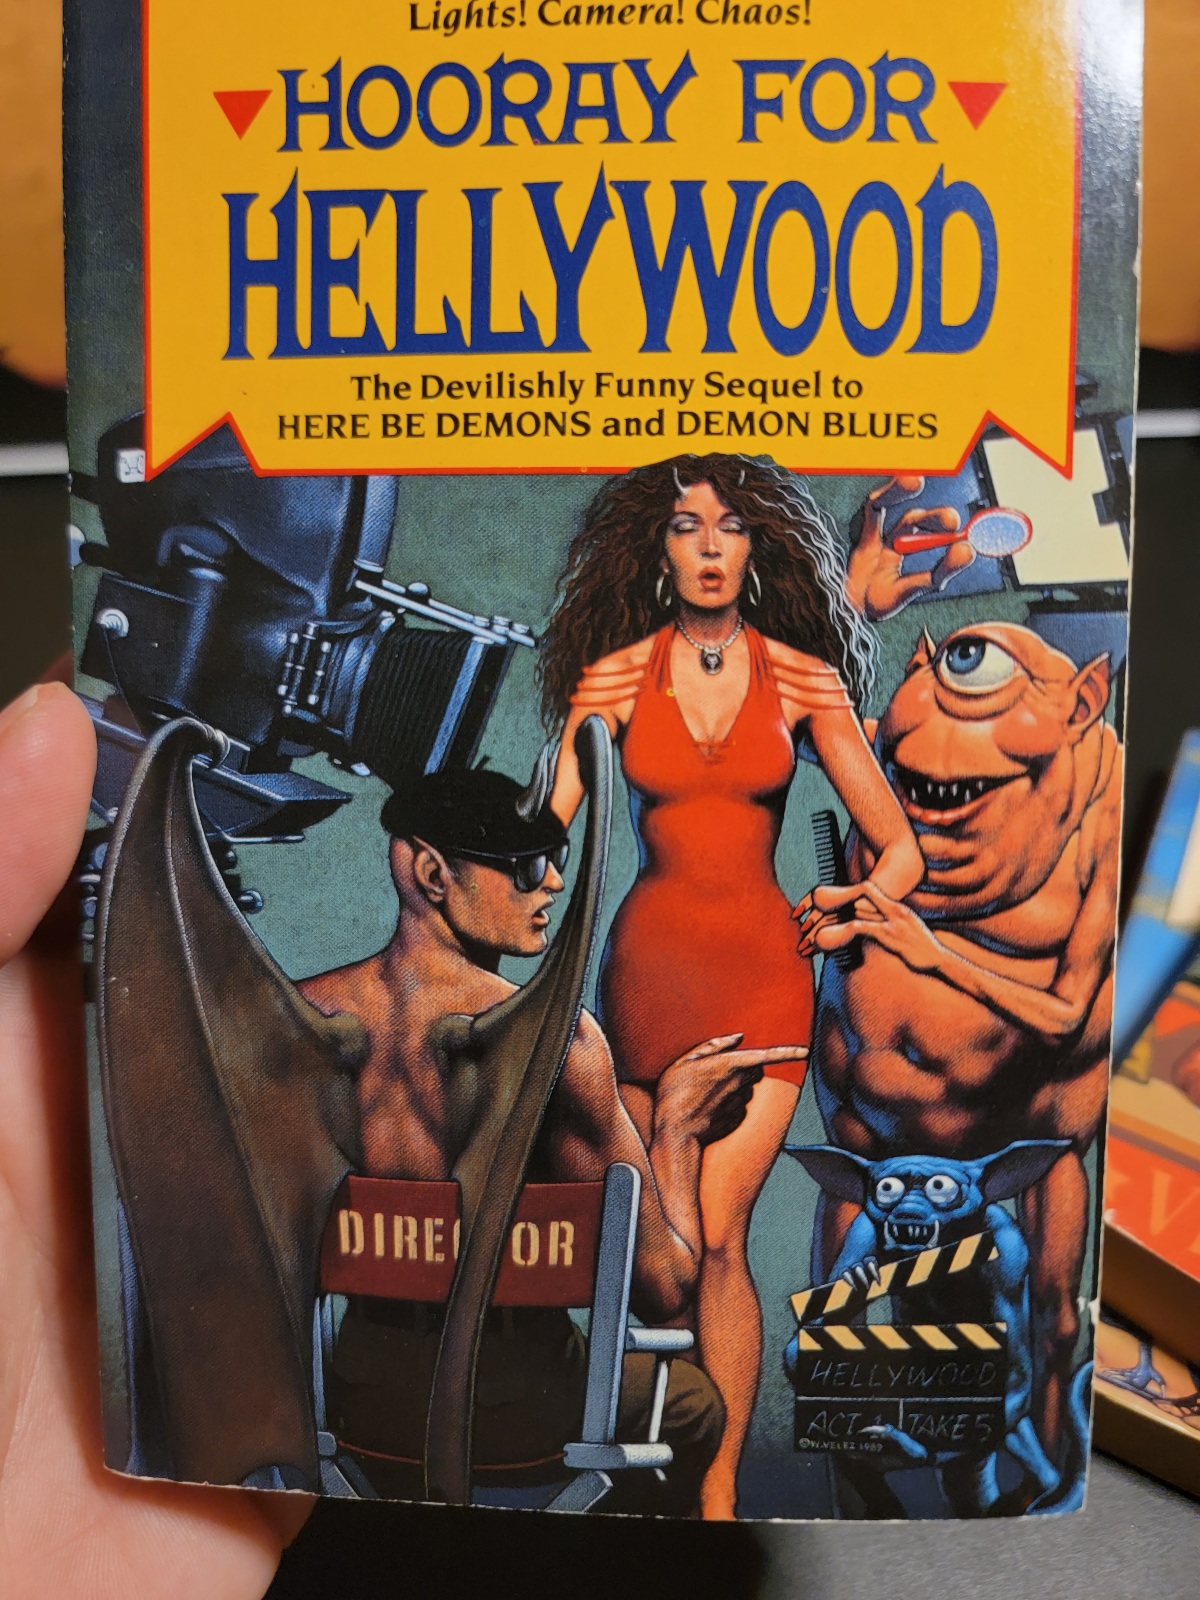 Demons Trilogy by Esther Friesner Ace Fantasy 1980s Paperback Set